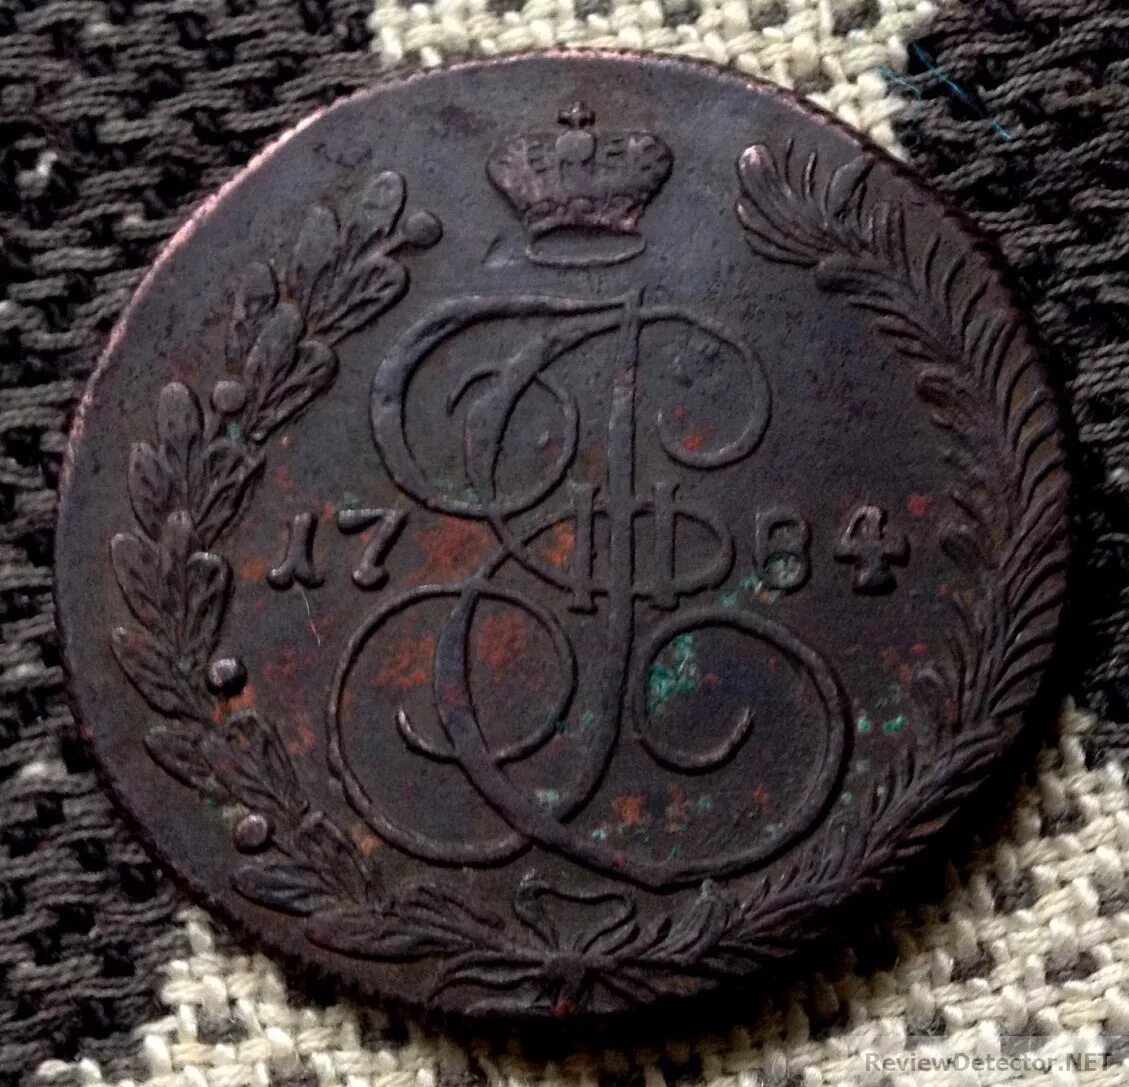 Царские монеты 1700